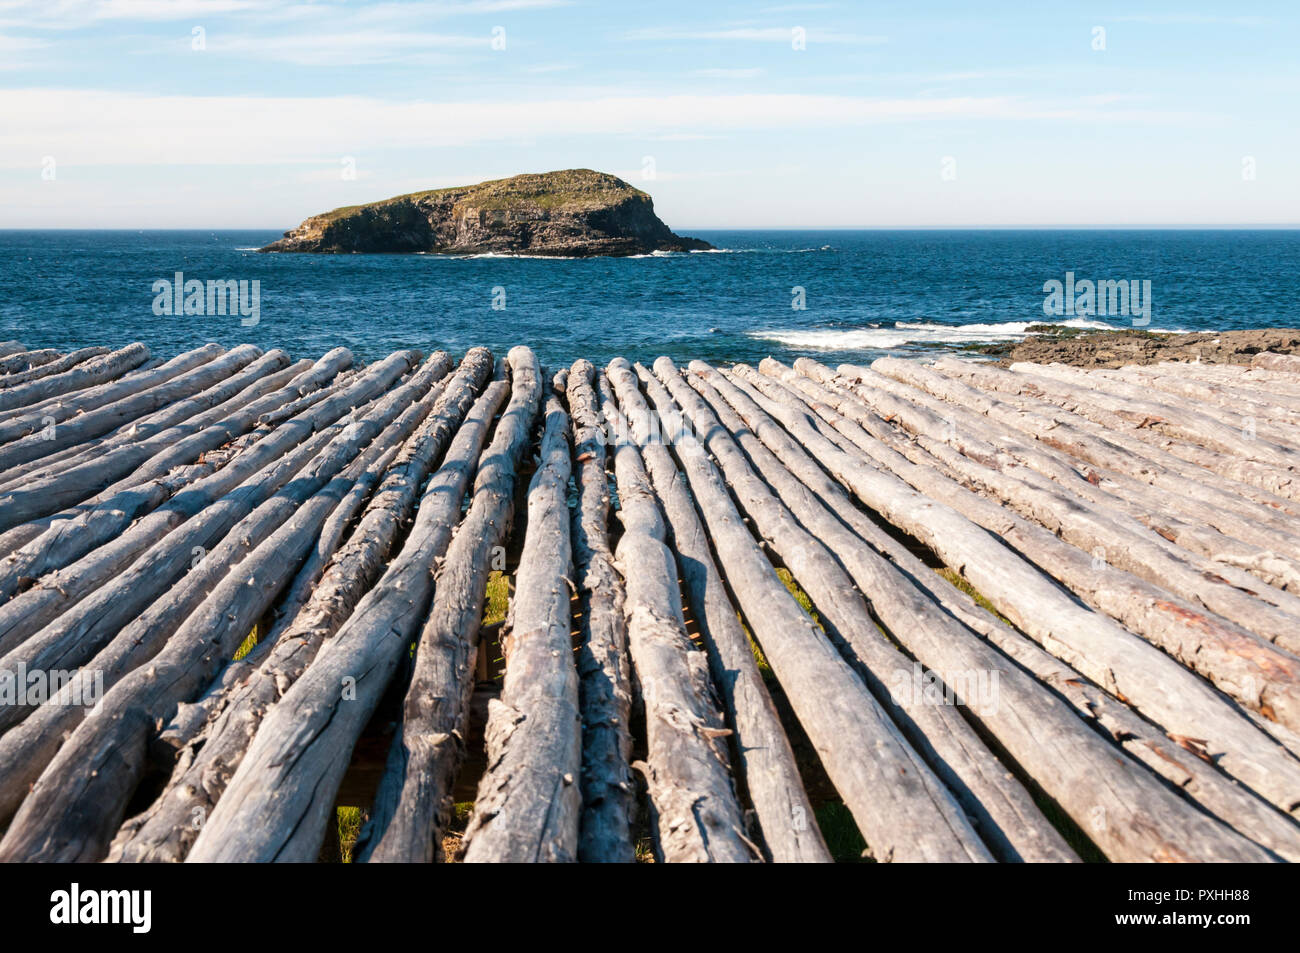 Un Terranova di scaglie di pesce, un rilievo piattaforma di legno per essiccare il pesce. Foto Stock